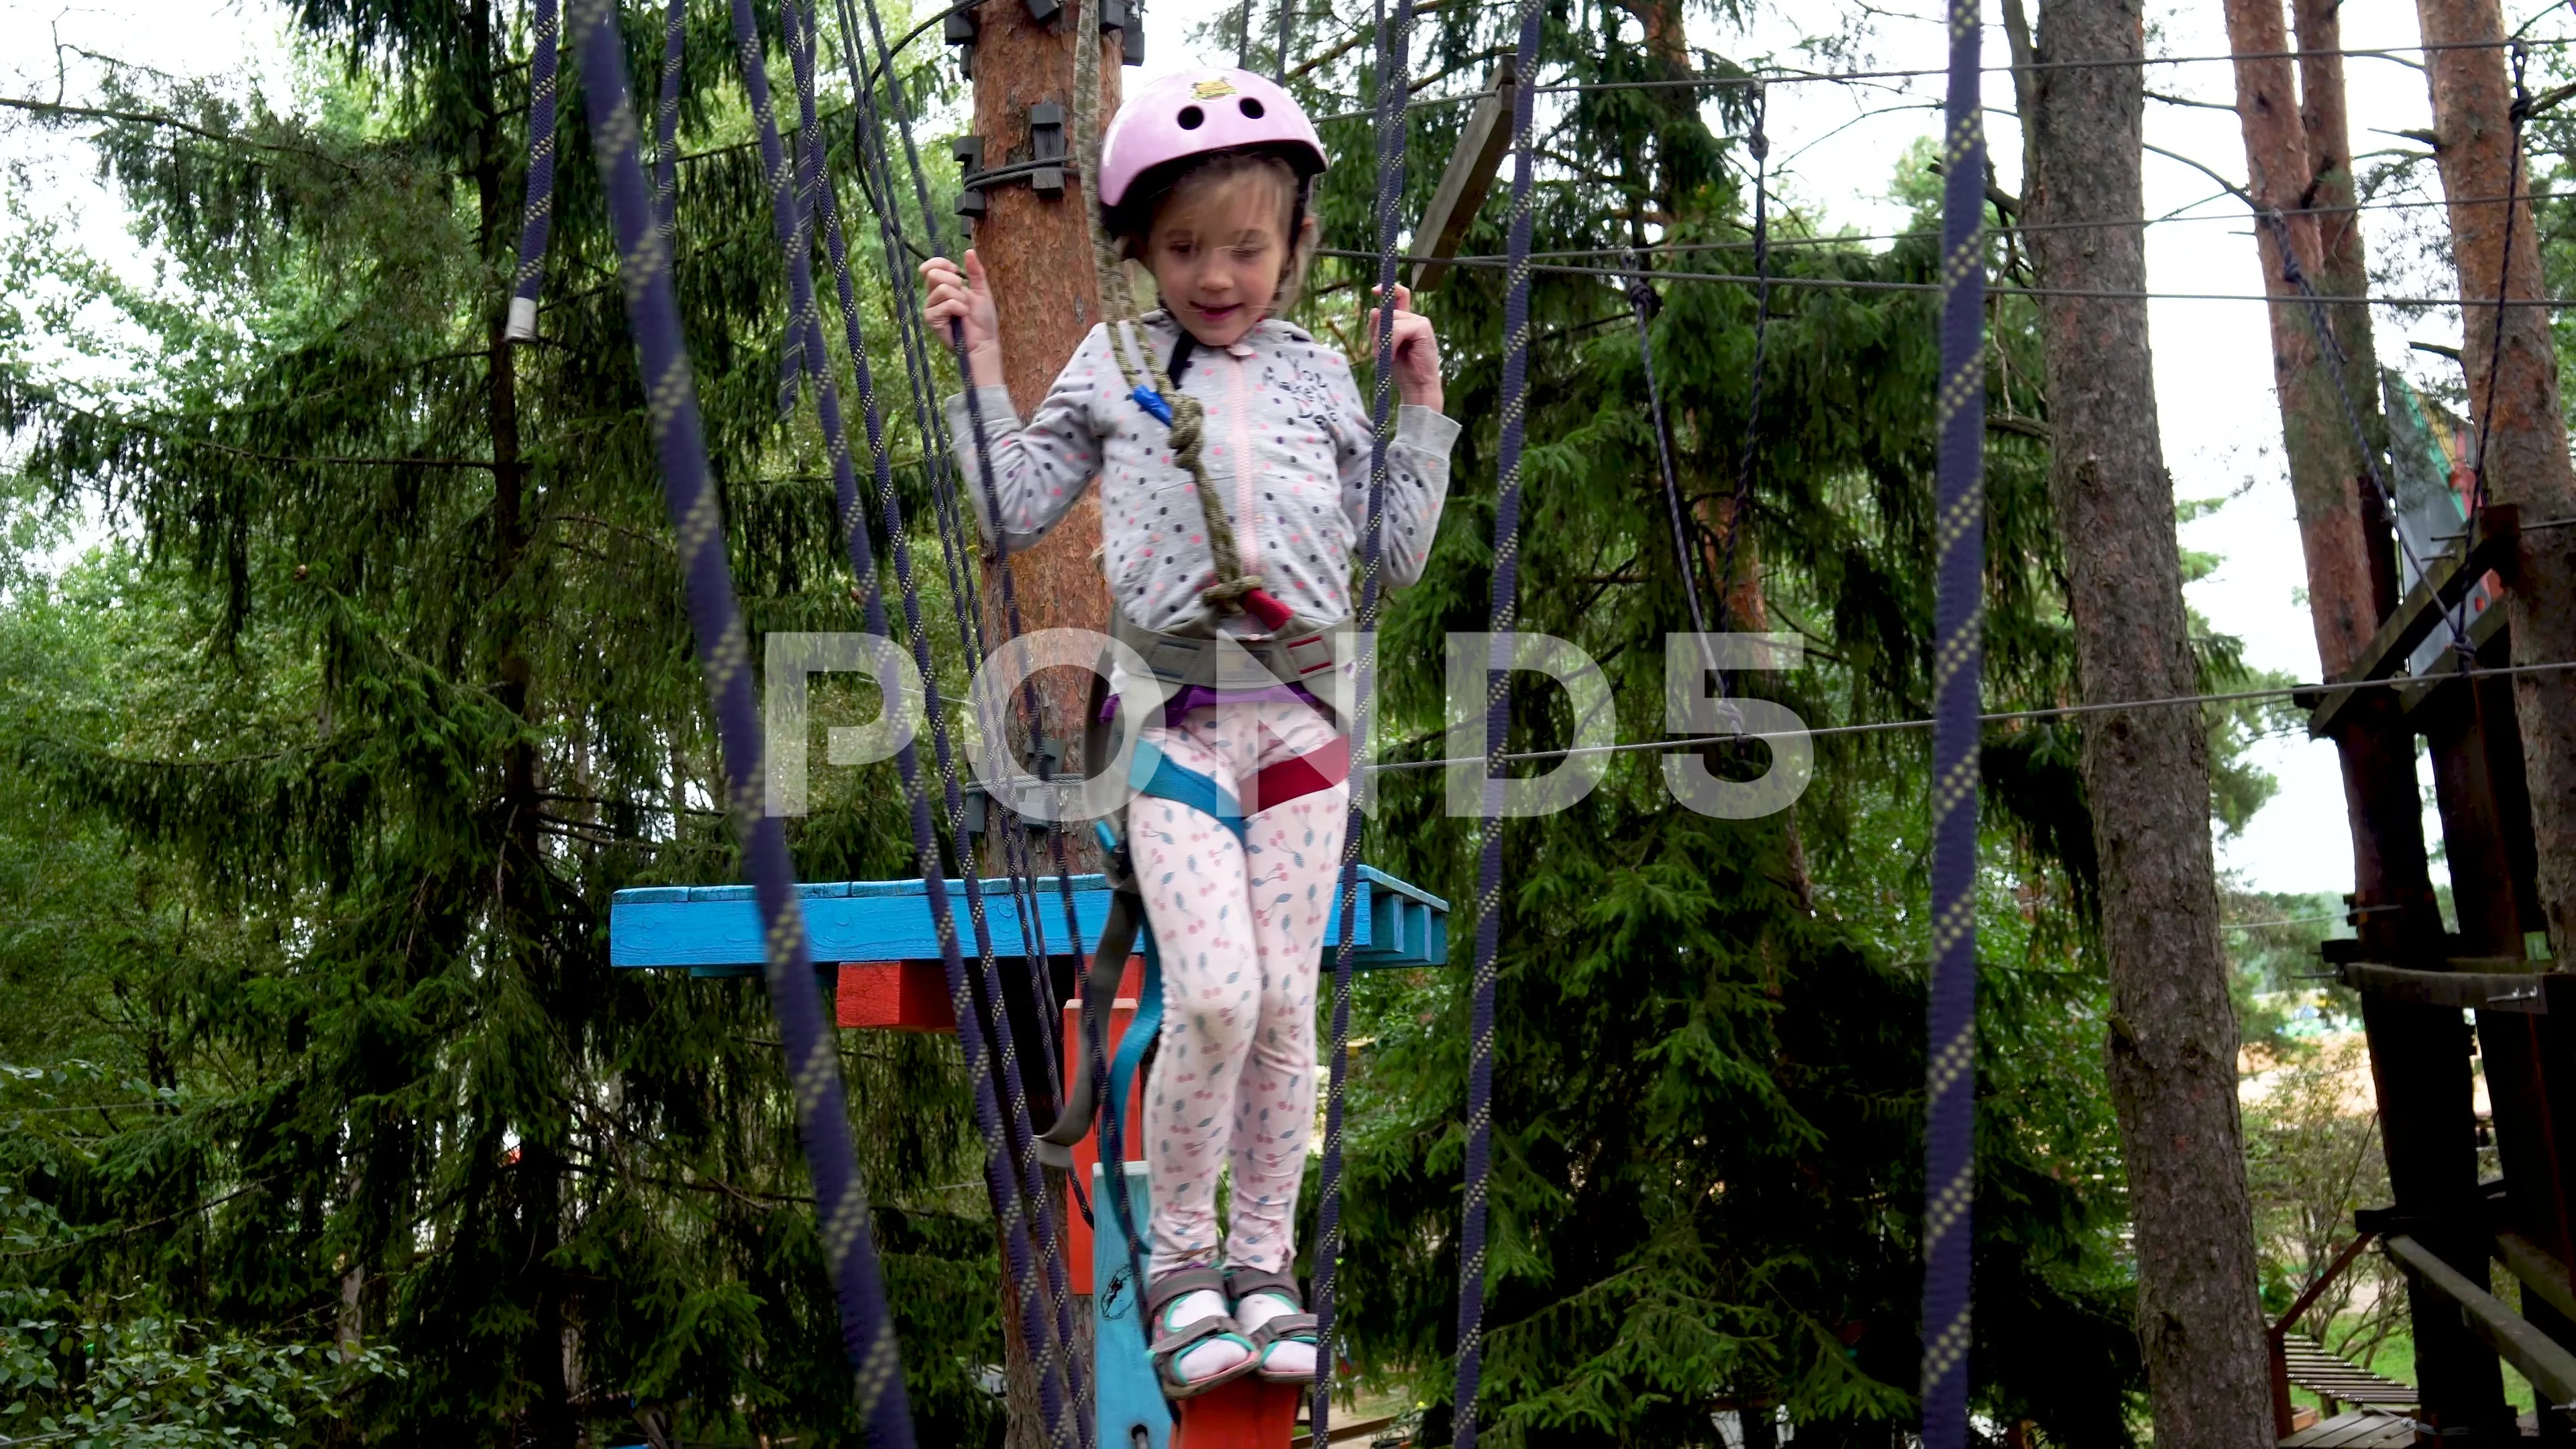 https://images.pond5.com/girl-moving-rope-parks-hanging-footage-163977891_prevstill.jpeg